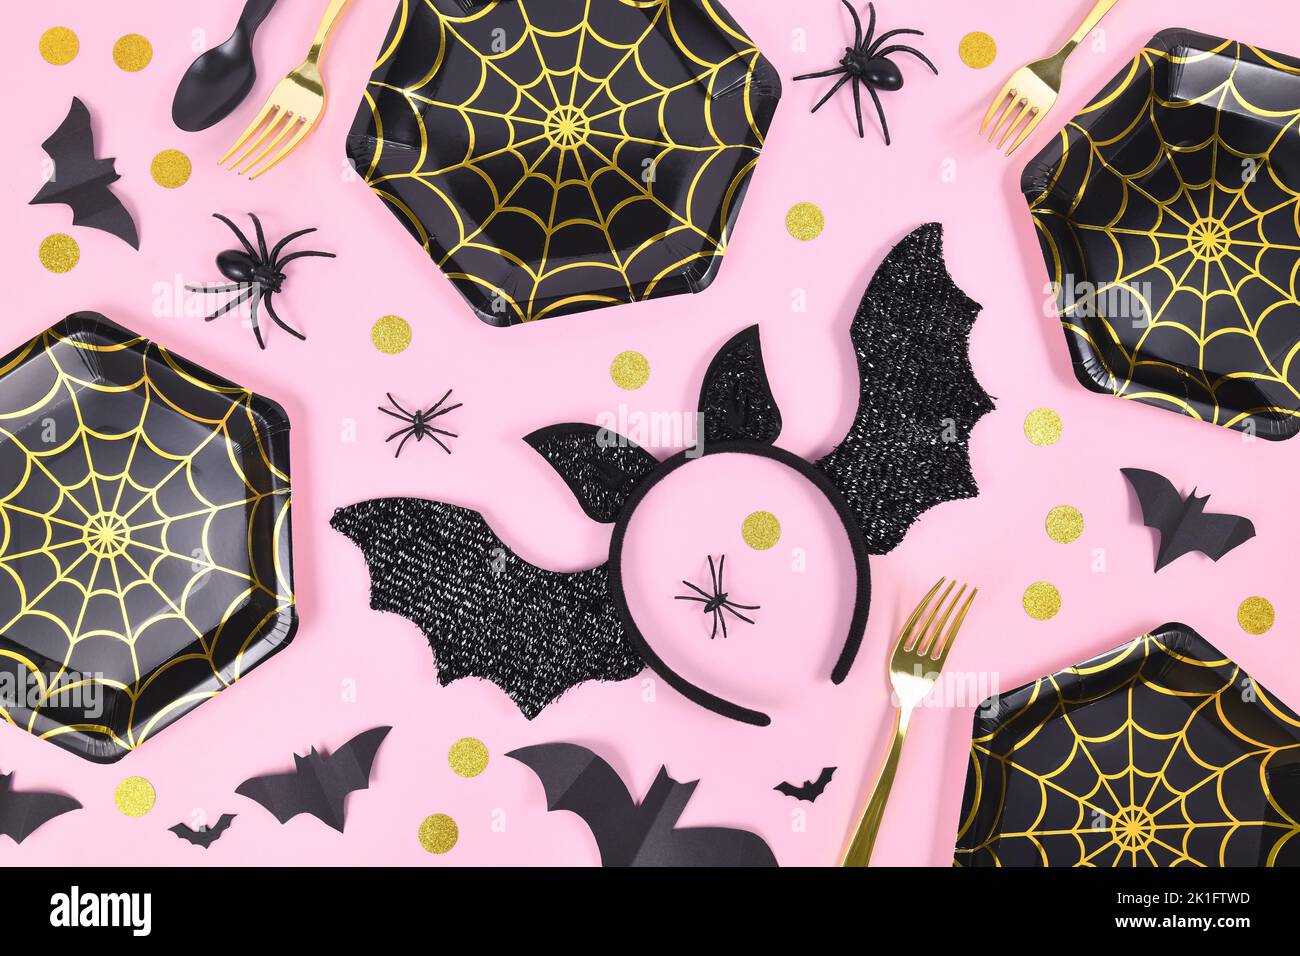 Piatto da festa di Halloween con piastre in rete di ragno nero e oro, ragni e coriandoli su sfondo rosa Foto Stock